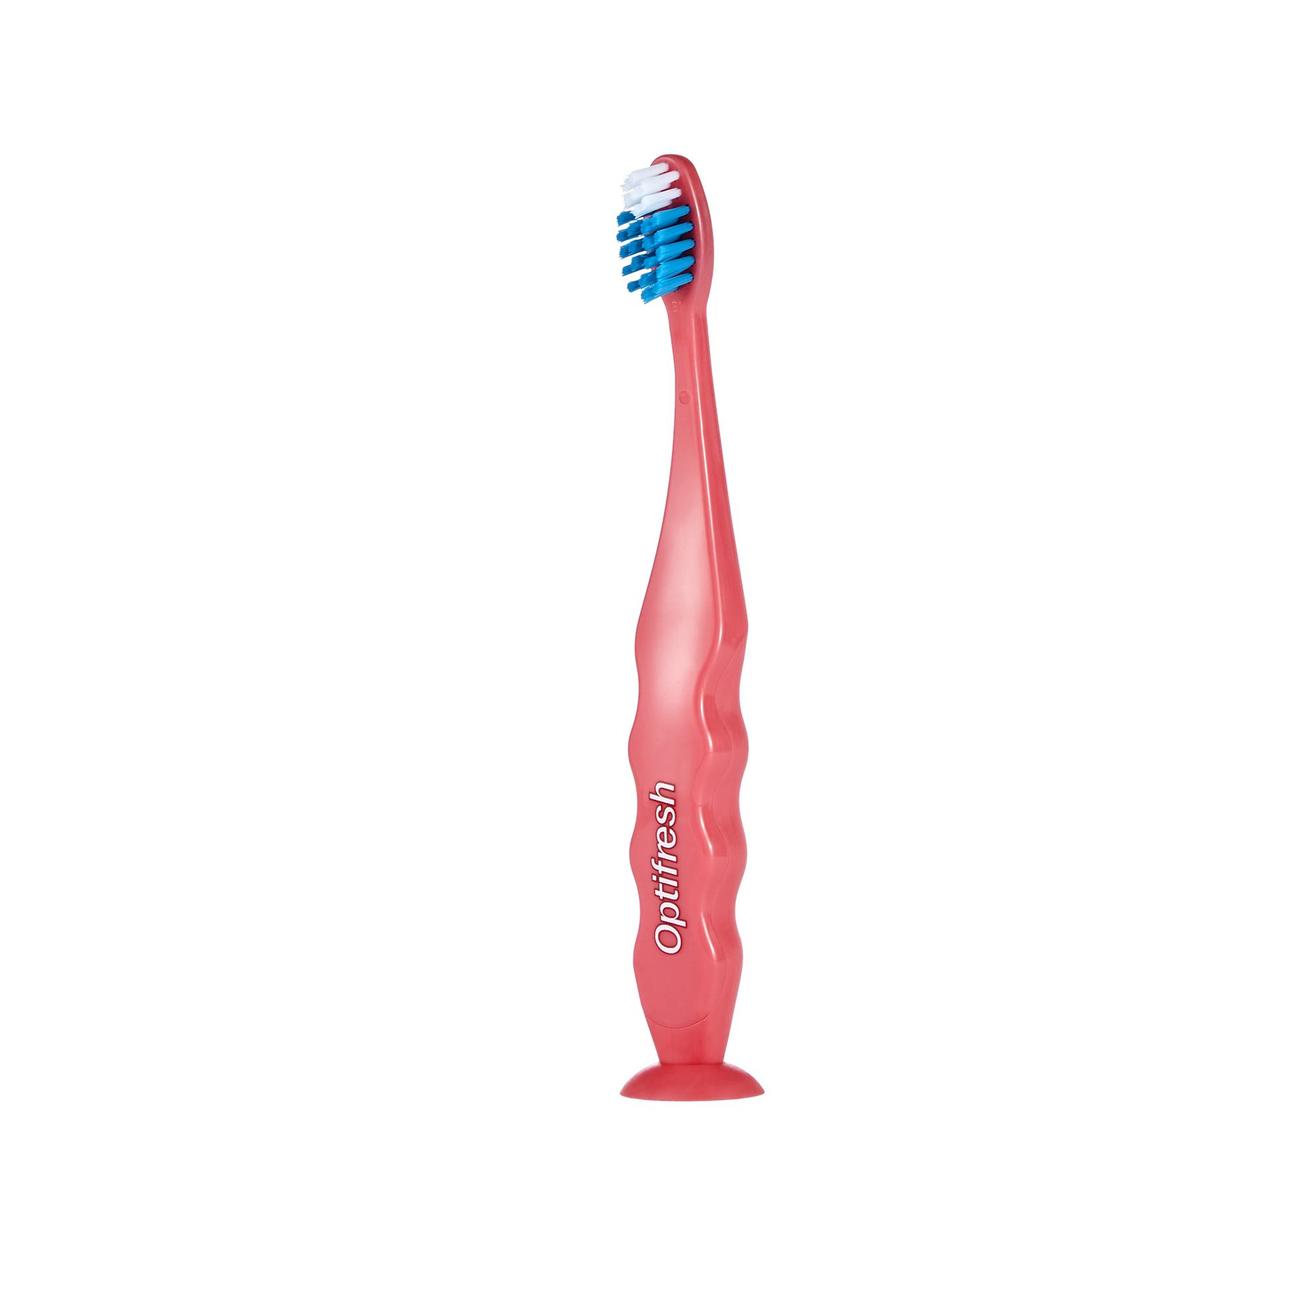 Tilbud: Kids Soft Toothbrush - Pink kr 55 på Oriflame